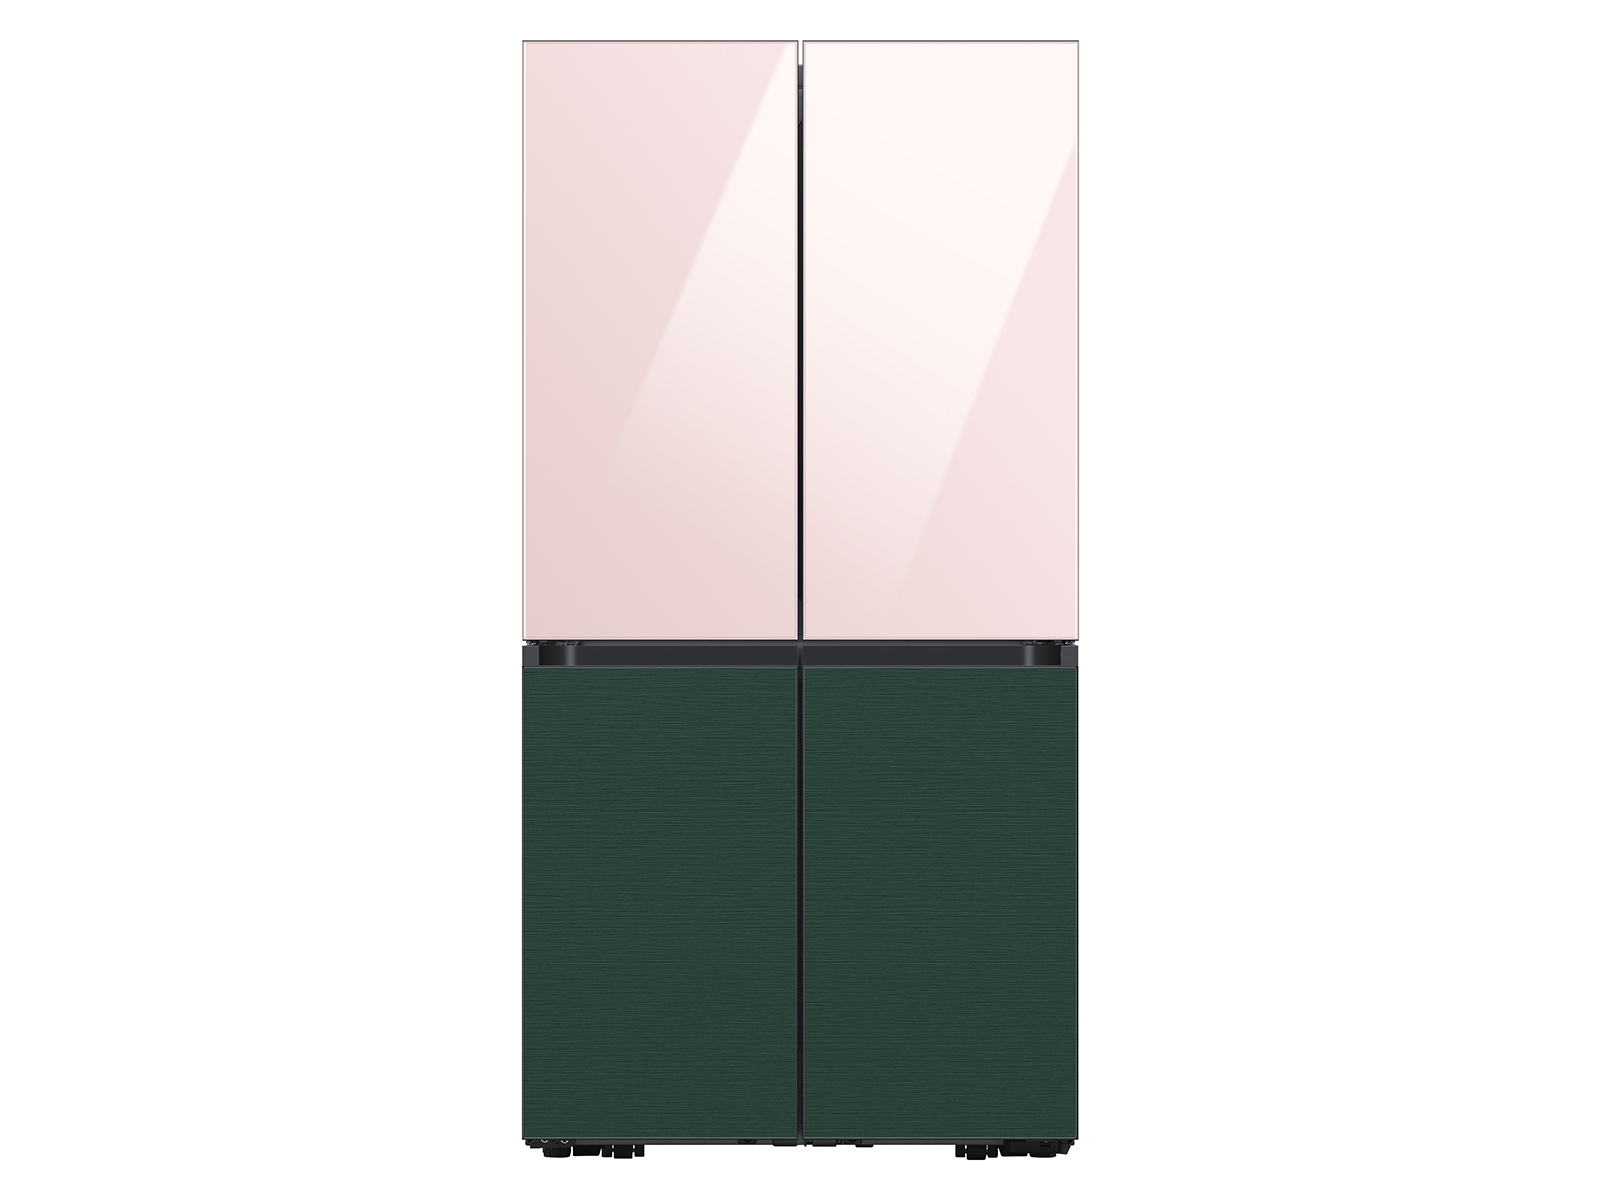 Thumbnail image of Bespoke 4-Door Flex™ Refrigerator Panel in Pink Glass - Top Panel